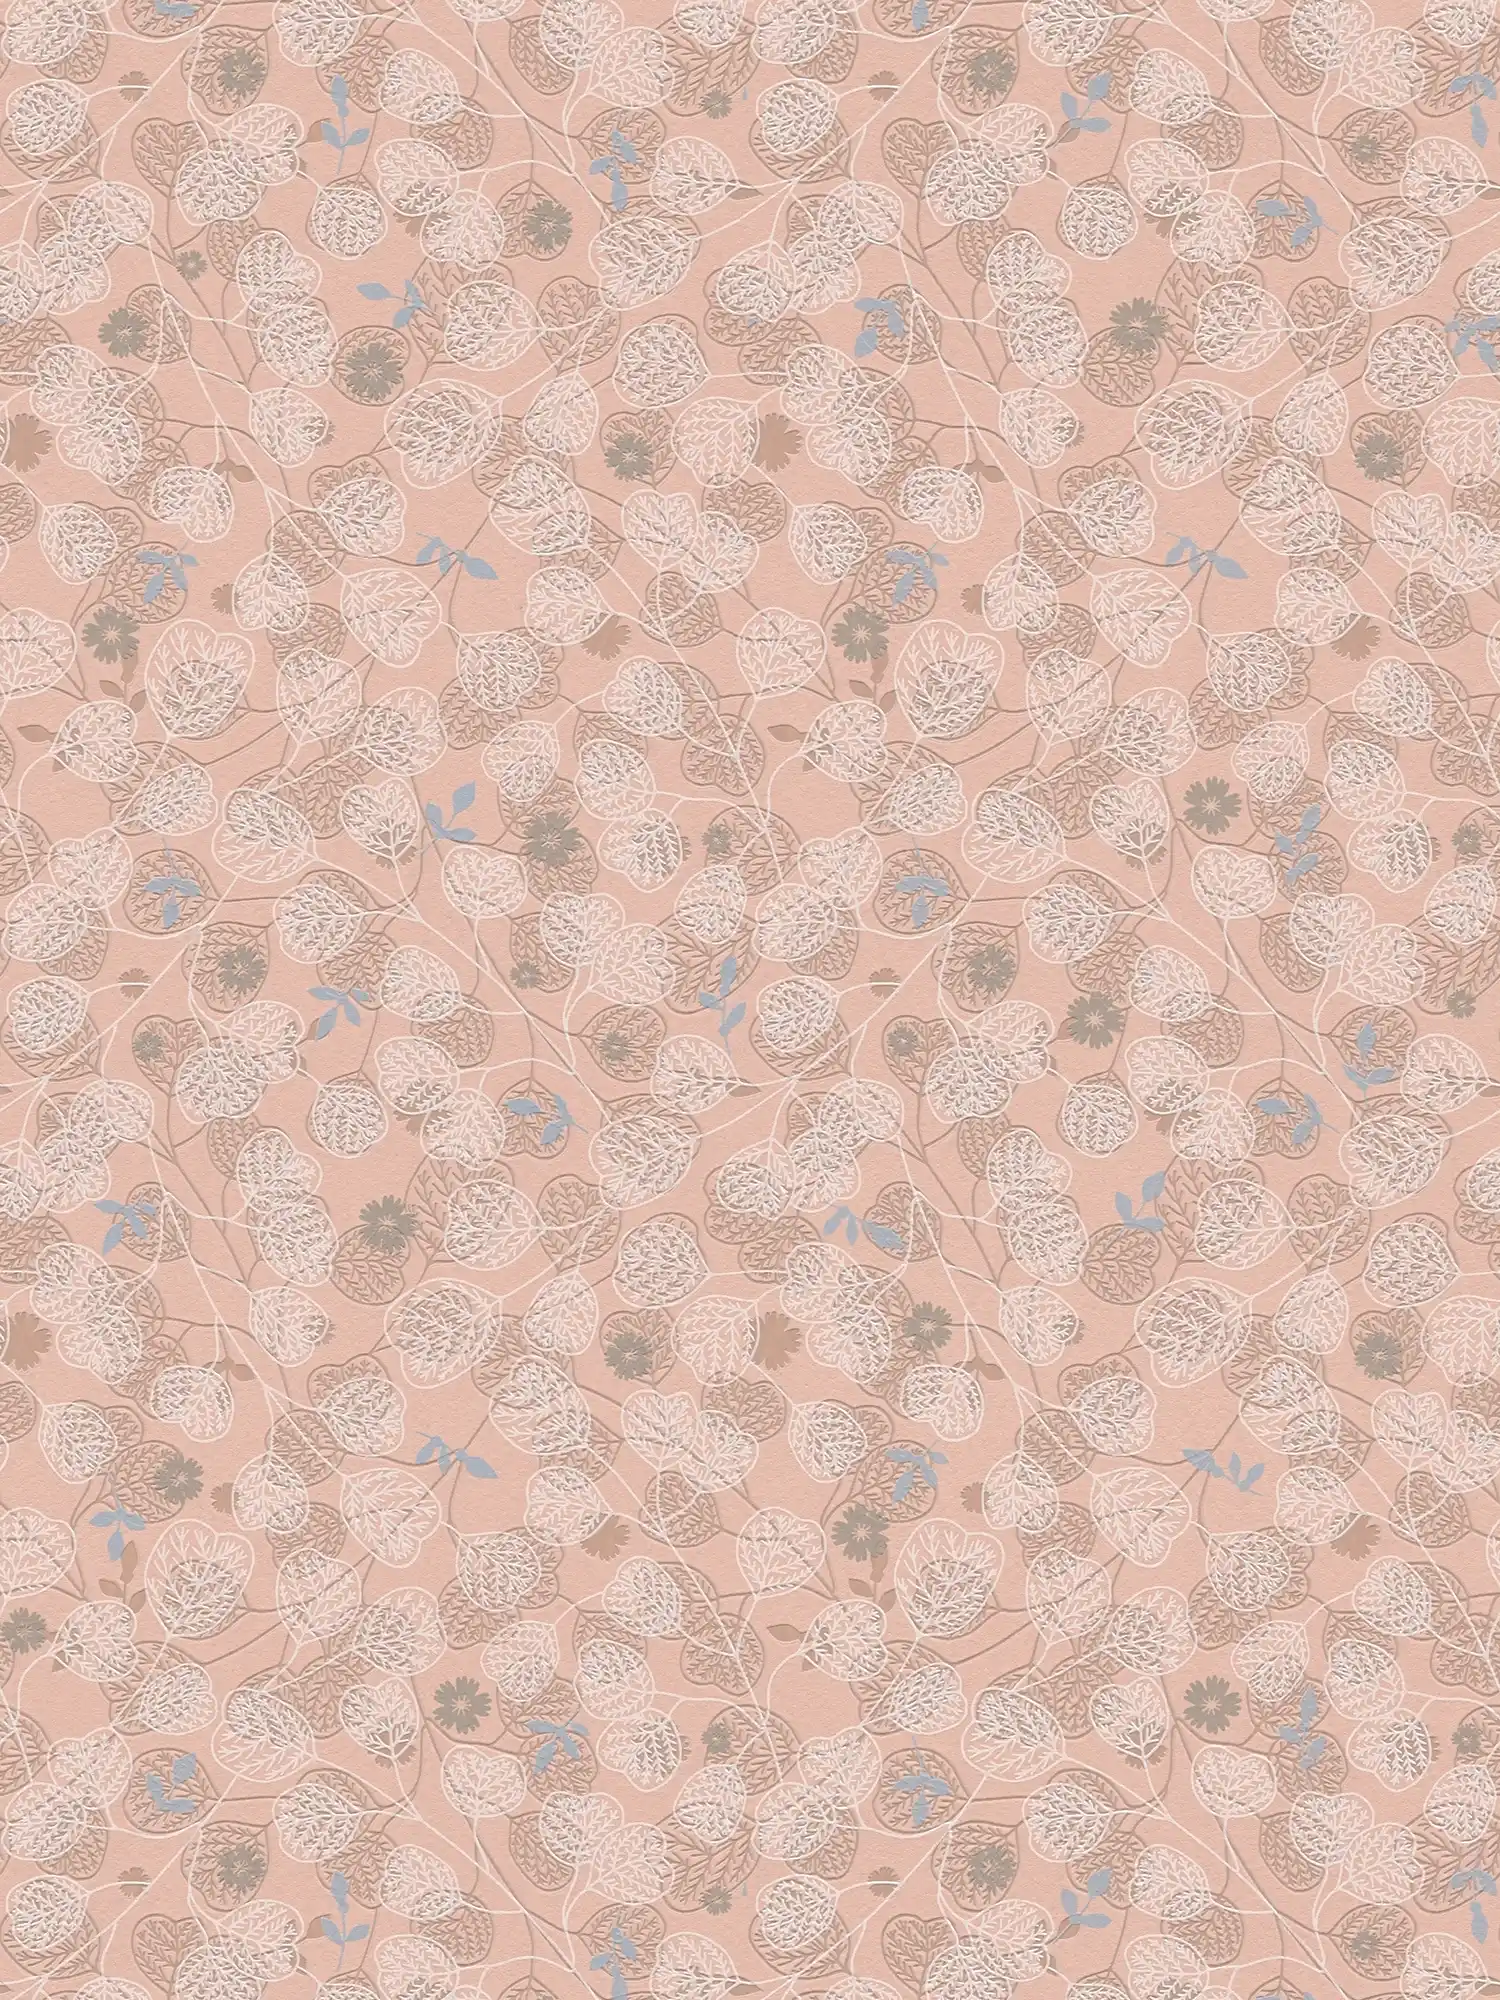 Papel pintado tejido-no tejido con motivos florales vintage - rosa, blanco, azul
